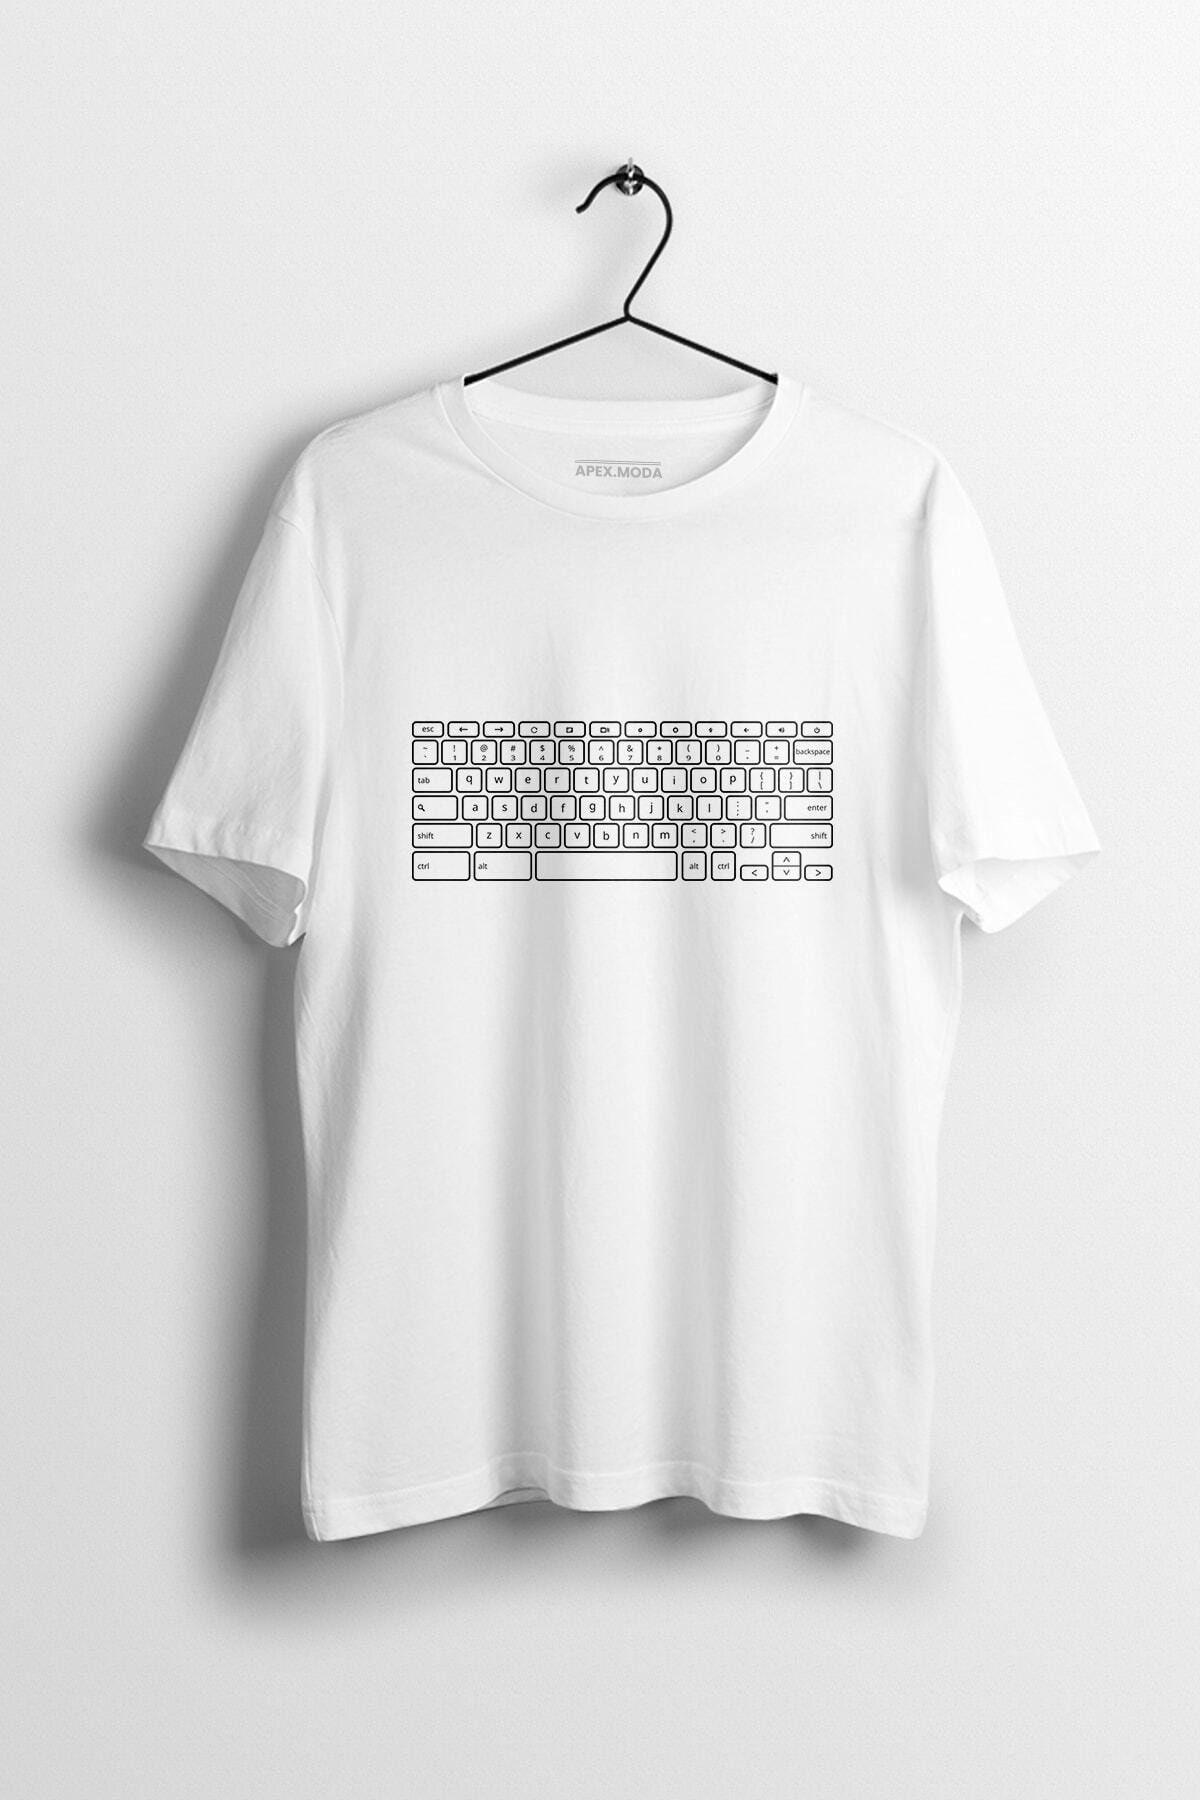 WePOD Keyboard Baskılı Tişört Baskılı Beyaz Kısa Kollu Unisex Tişört